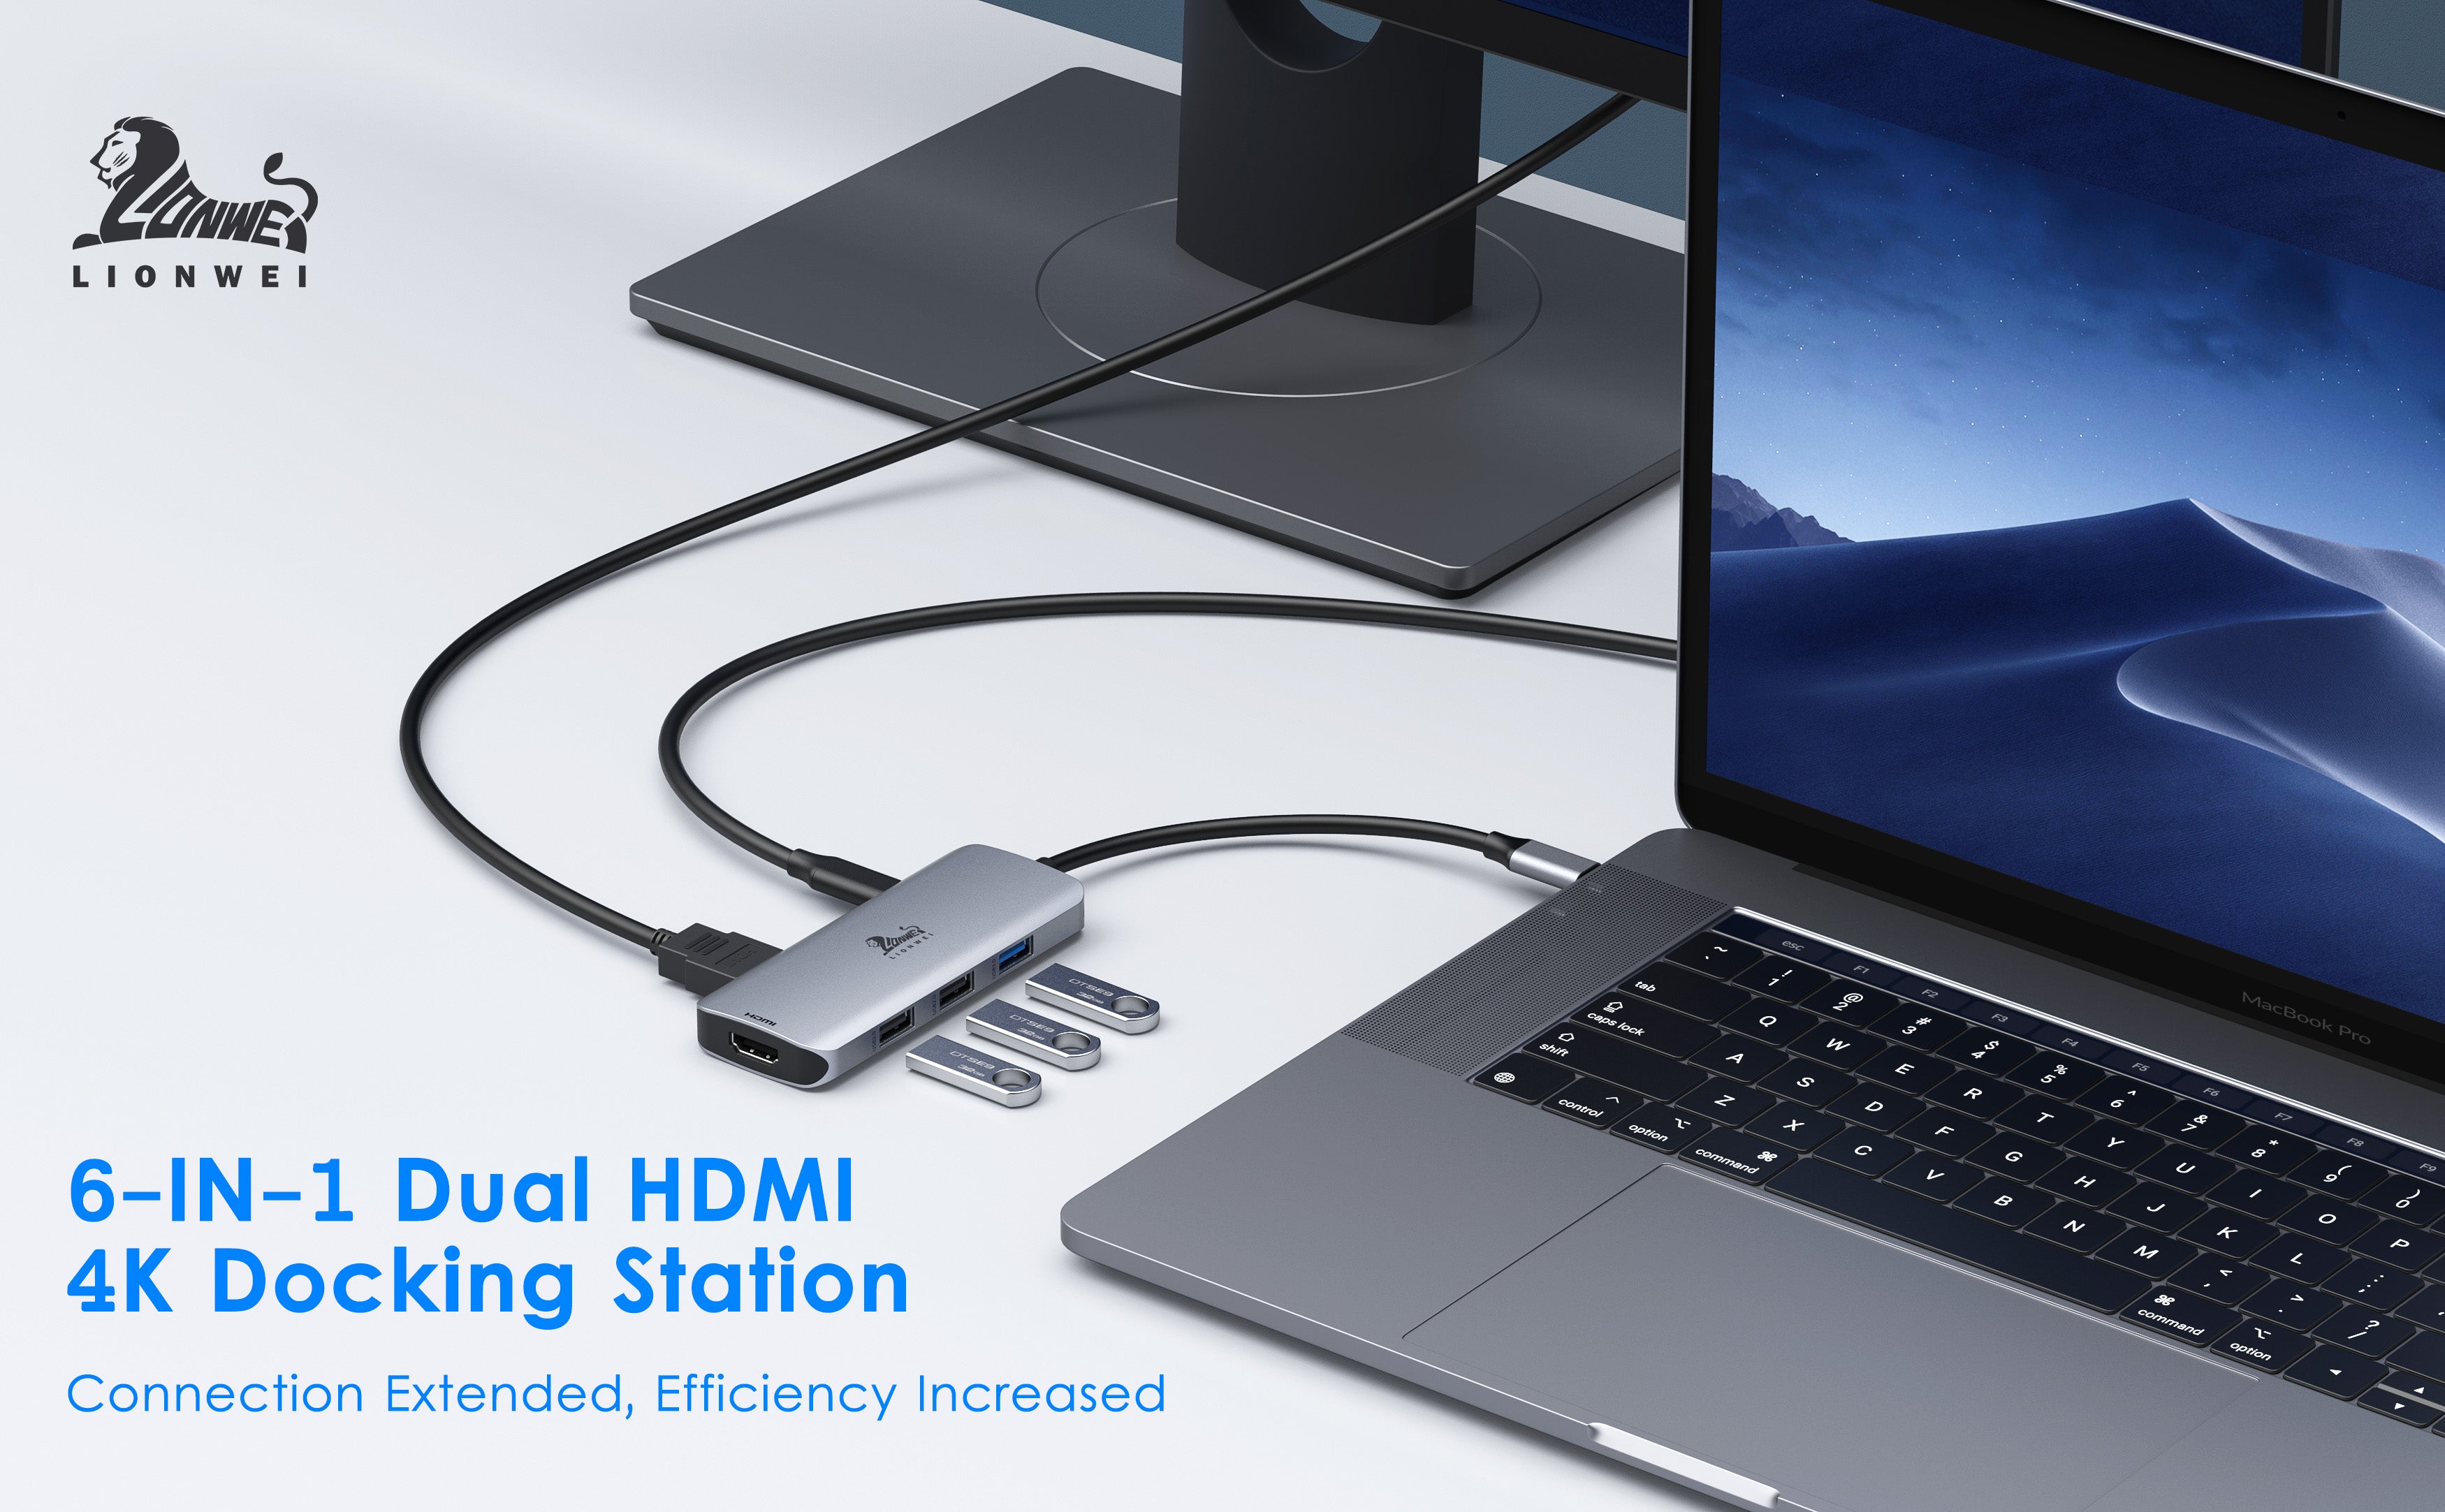 Lionwei USB C Docking Station Dual HDMI 6-IN-1